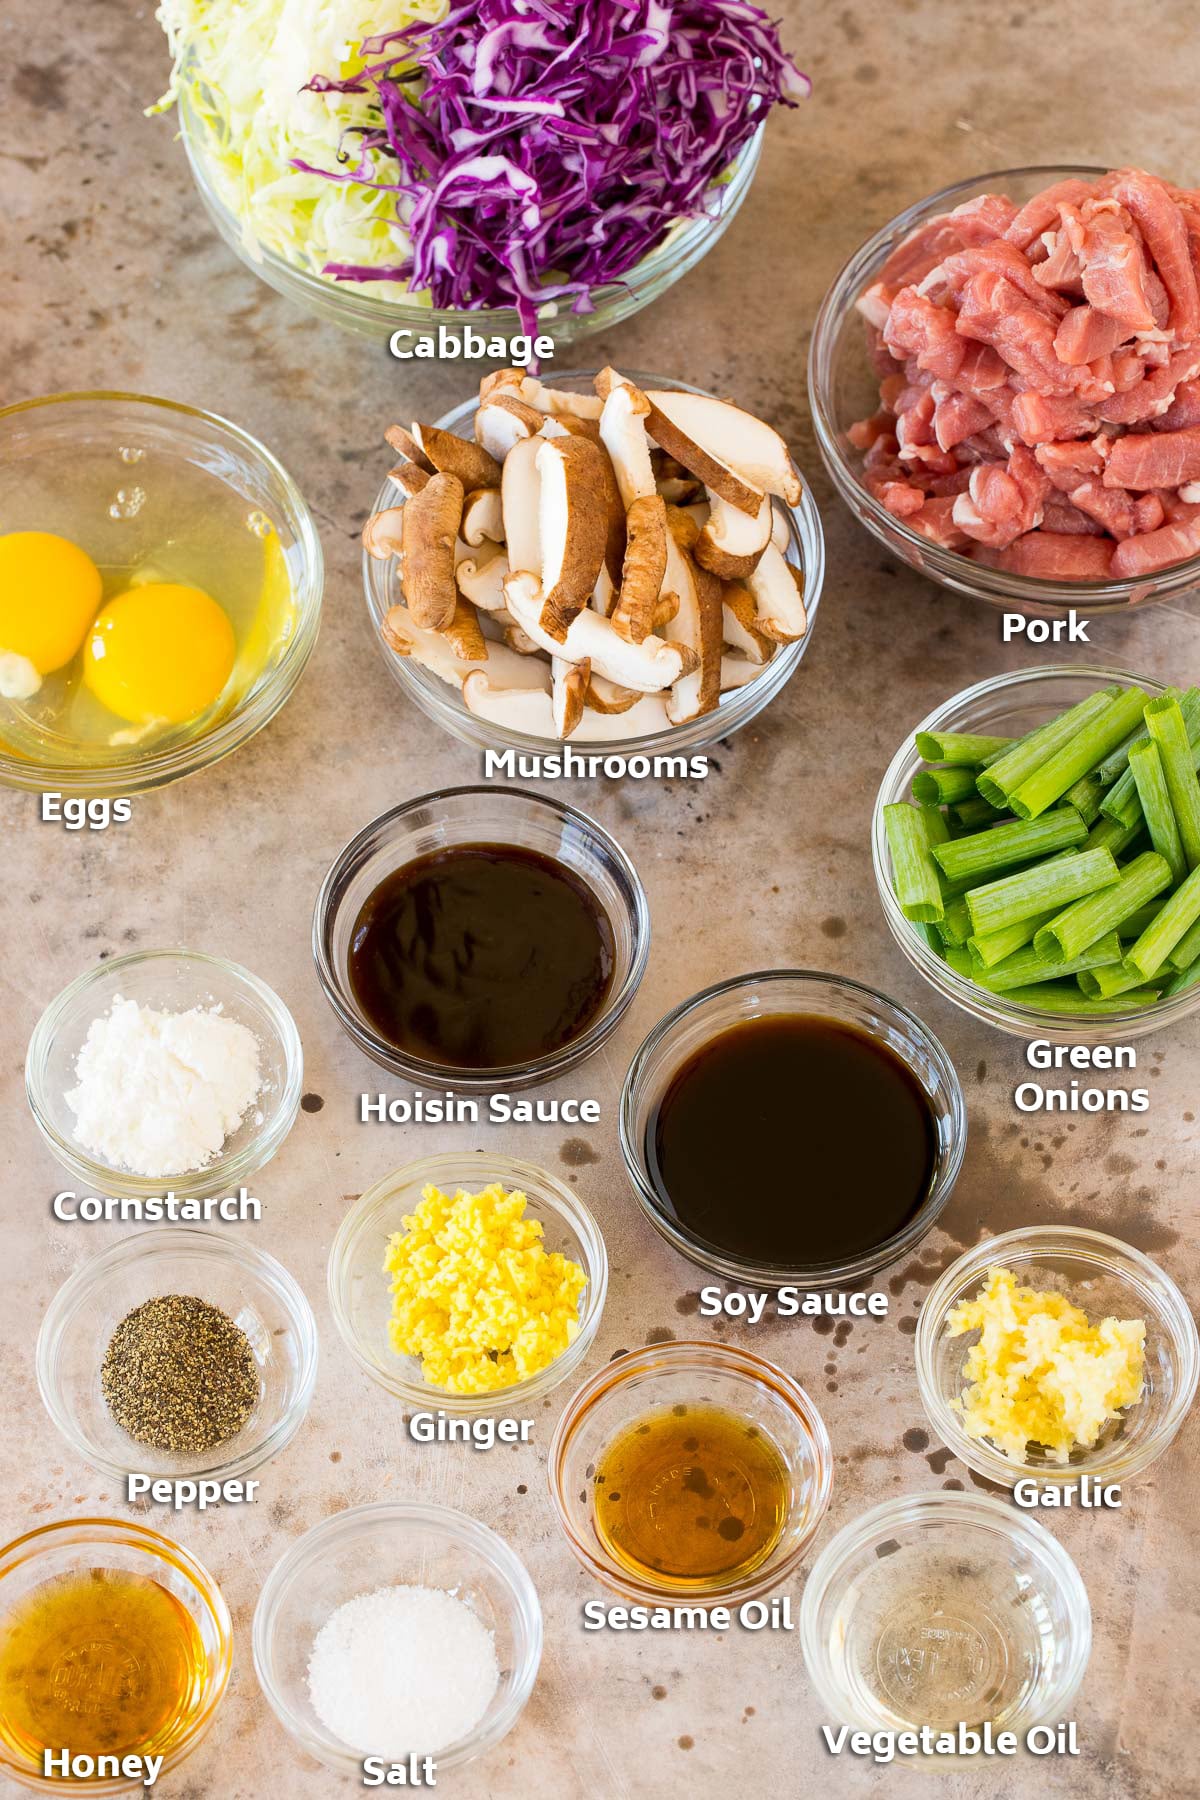 Bowls of ingredients including pork, vegetables, eggs and seasonings.